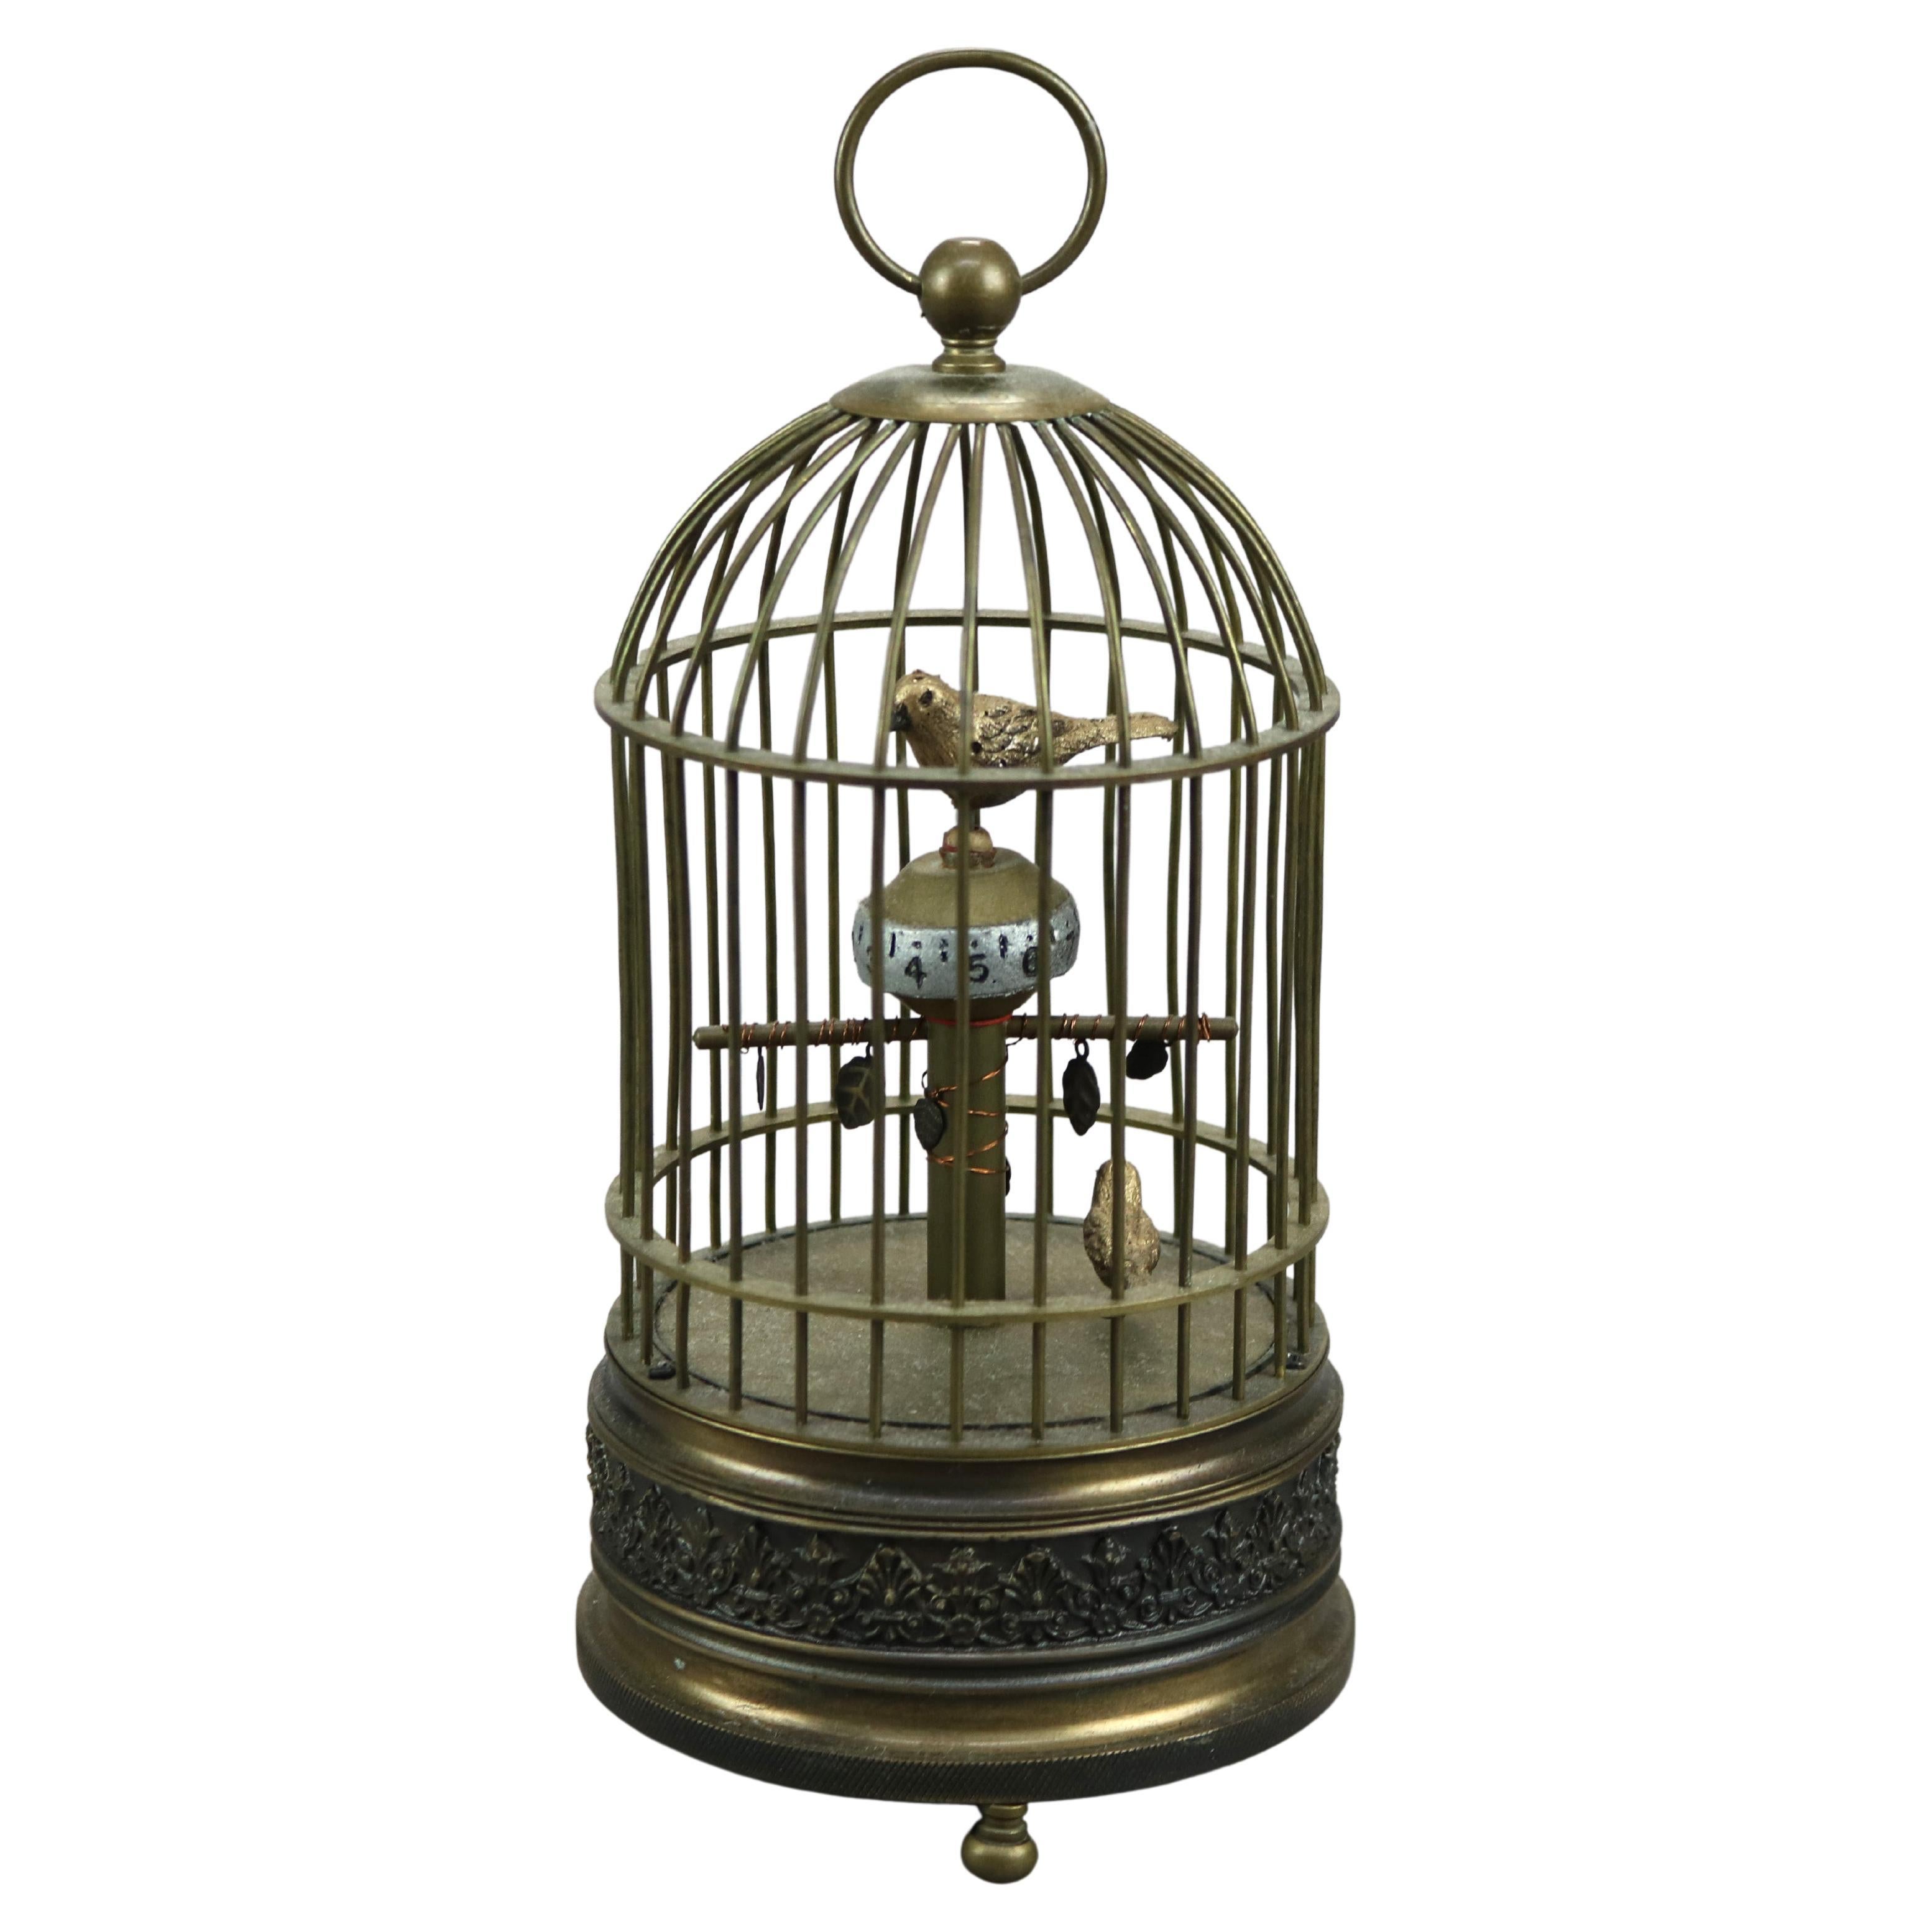 Antique Brass Bird Cage Desk Clock Circa 1910